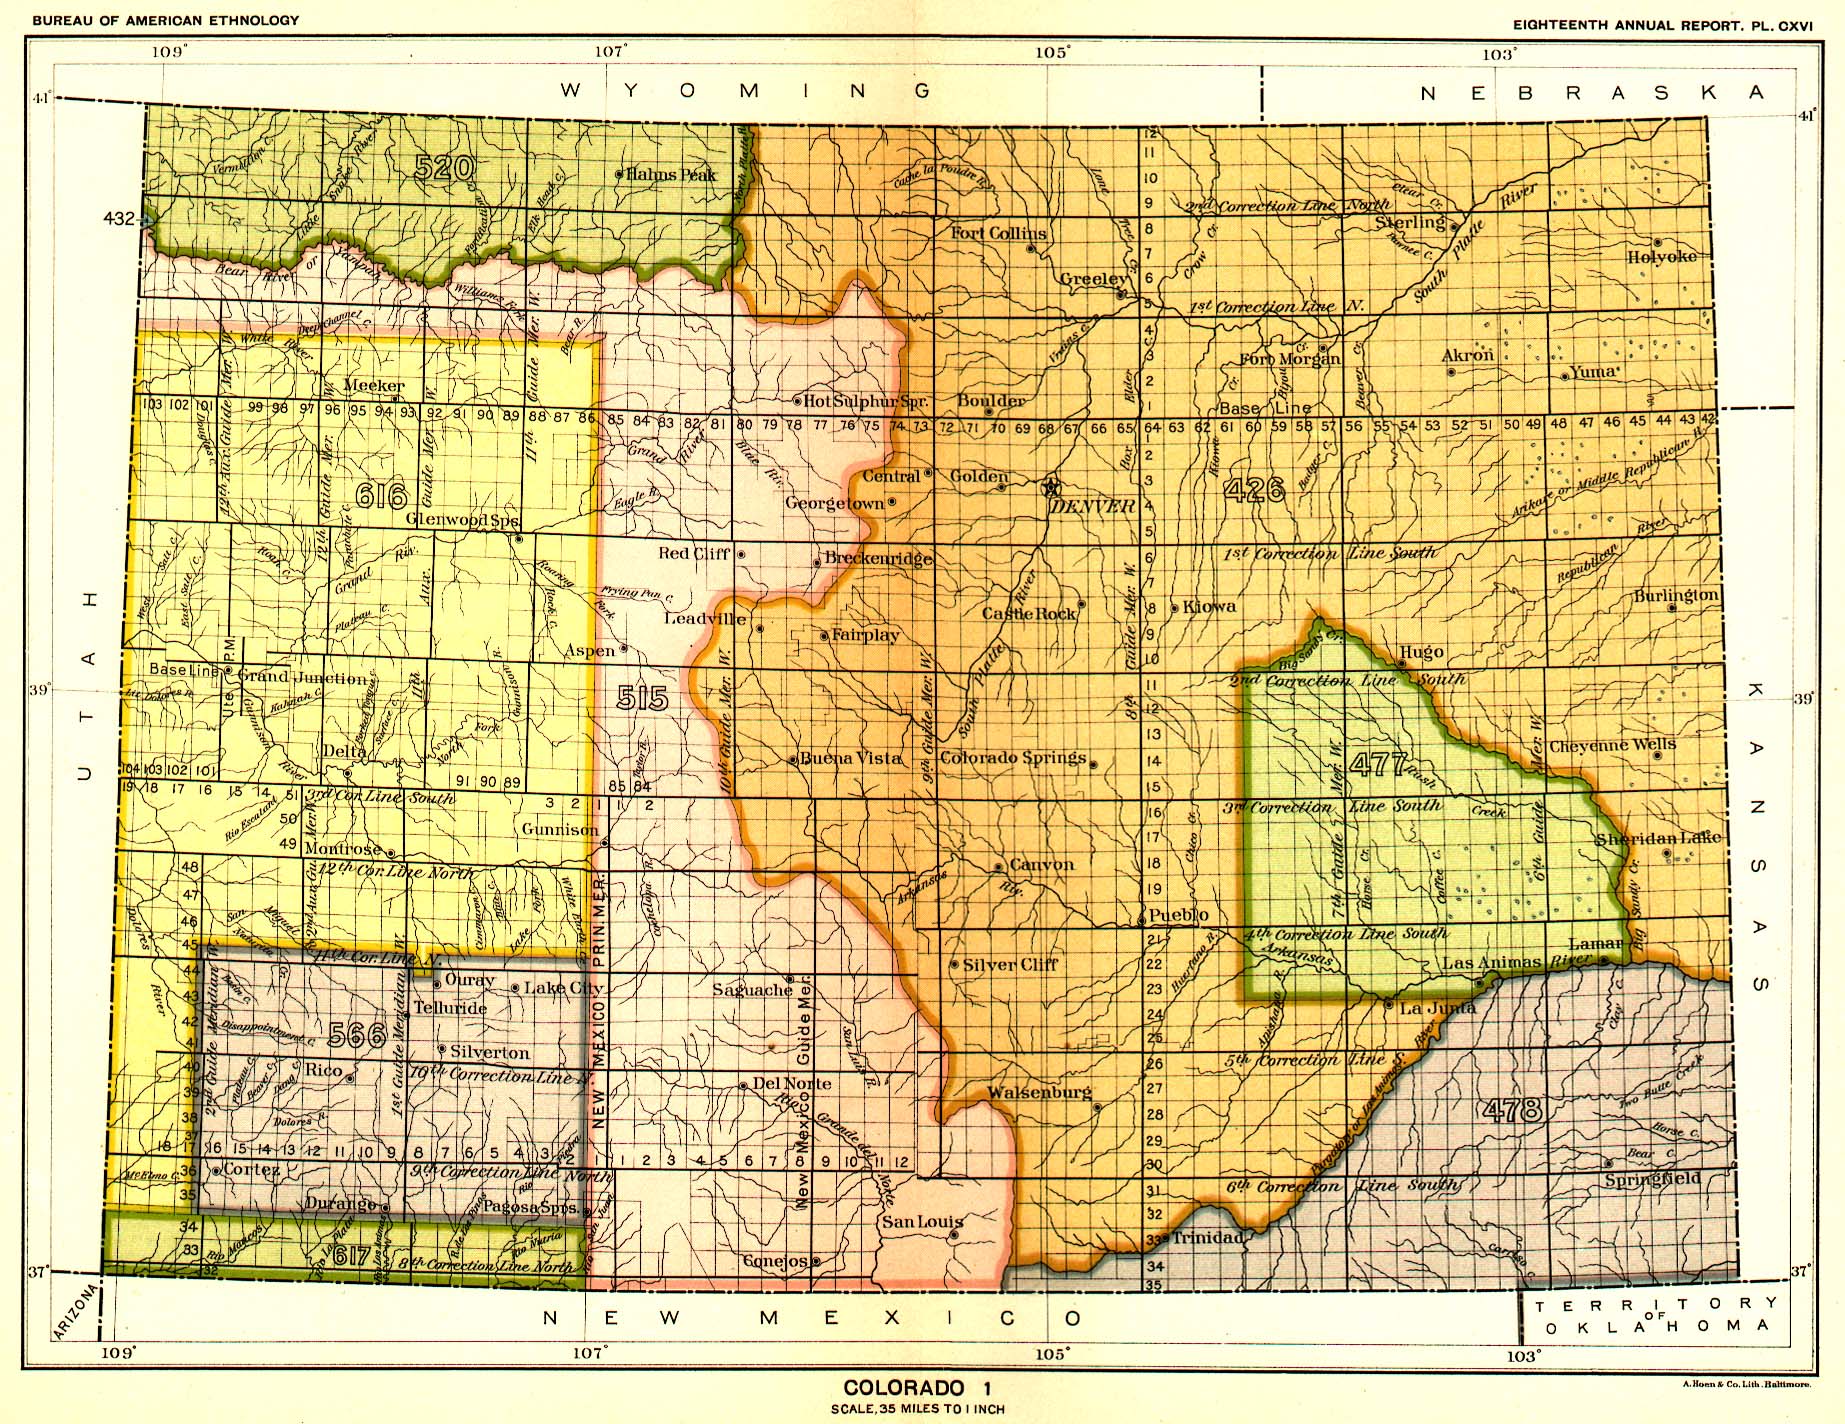 Colorado 1, Map 9